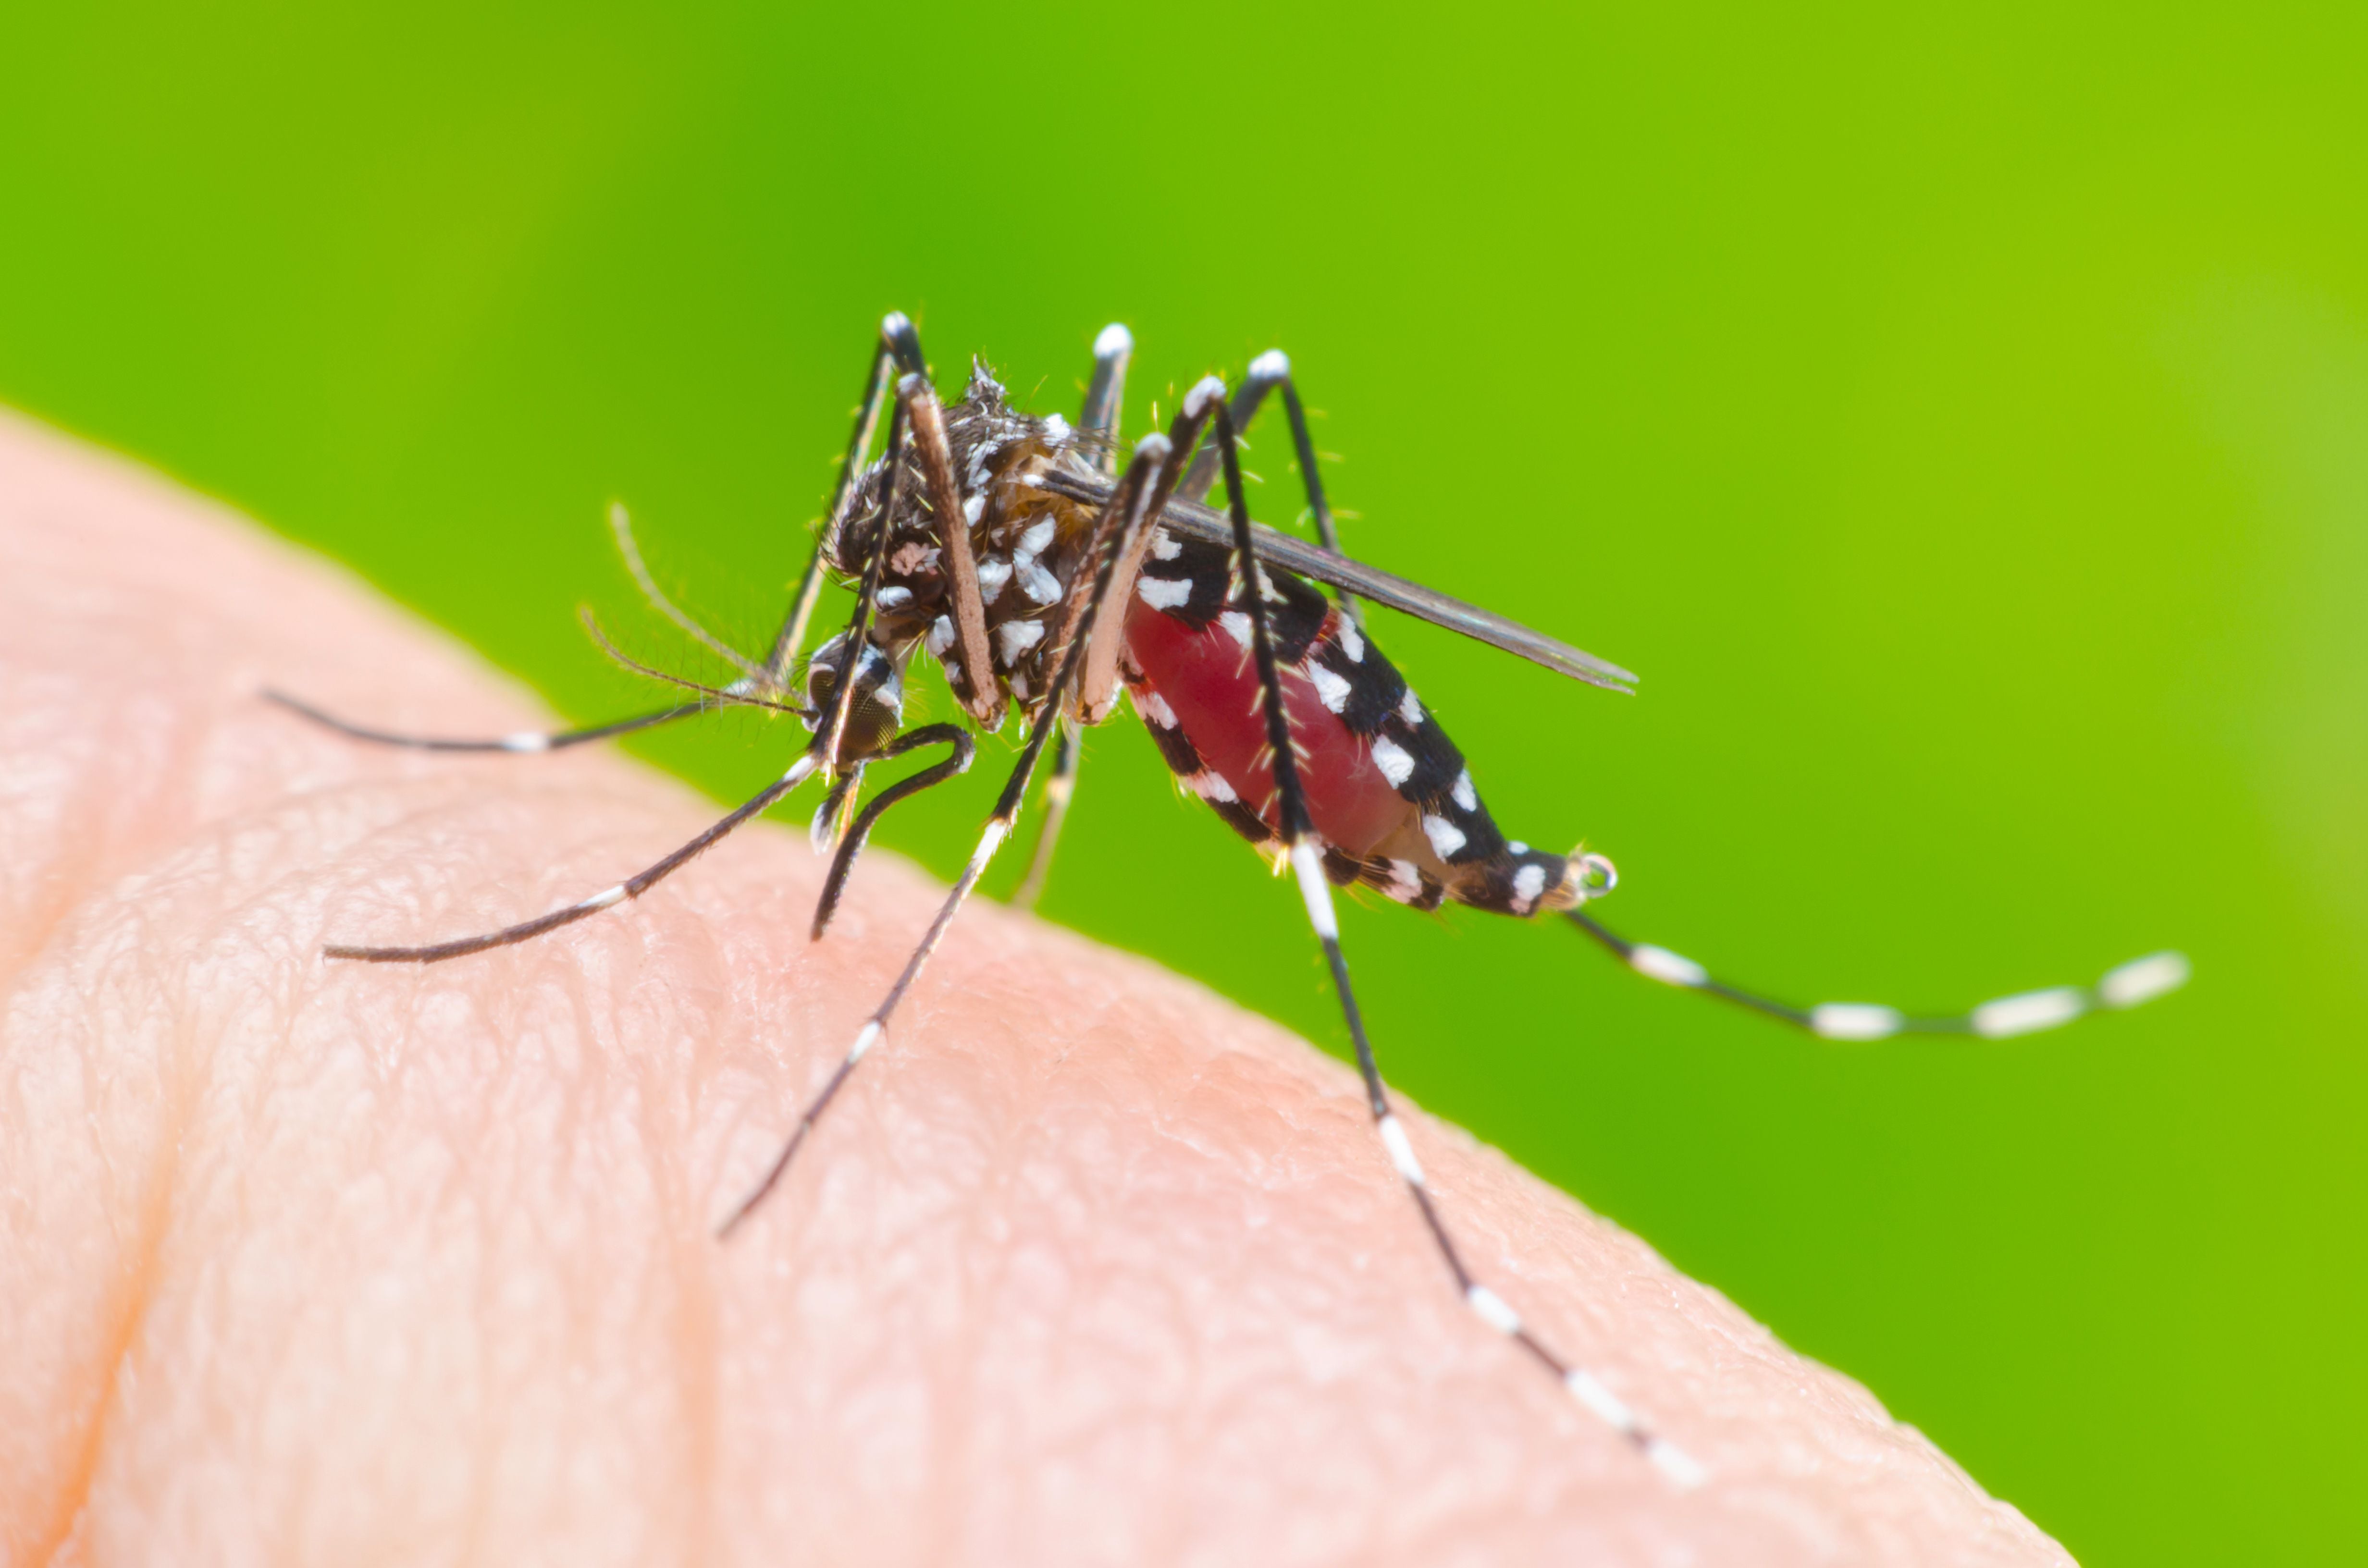 El dengue es una enfermedad transmitida por el zancudo Aedes aegypti, que también transmite otros males como zika o chikungunya.